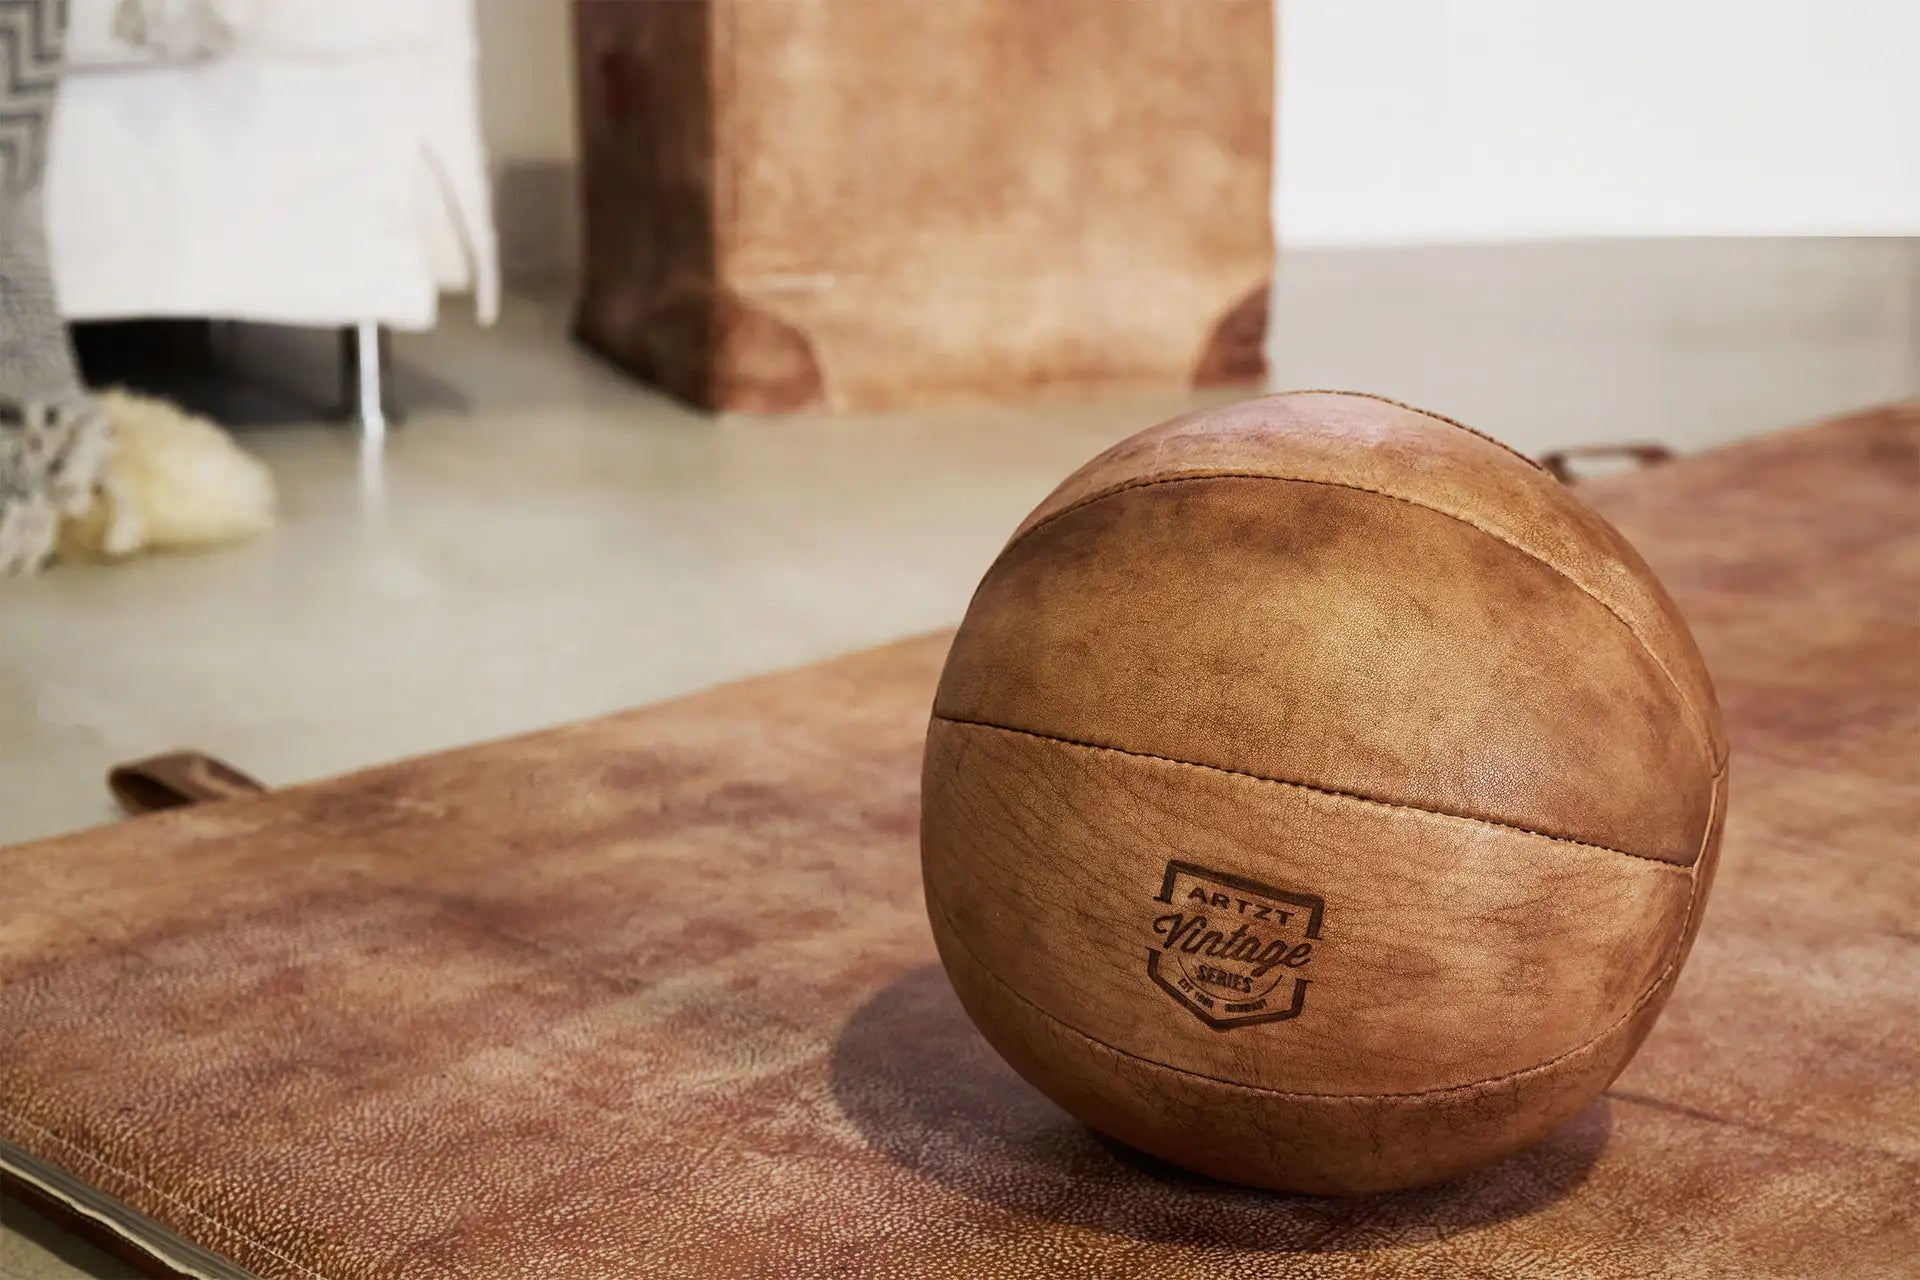 Ein ARTZT Vintage Series Medizinball liegt auf einer Turnmatte